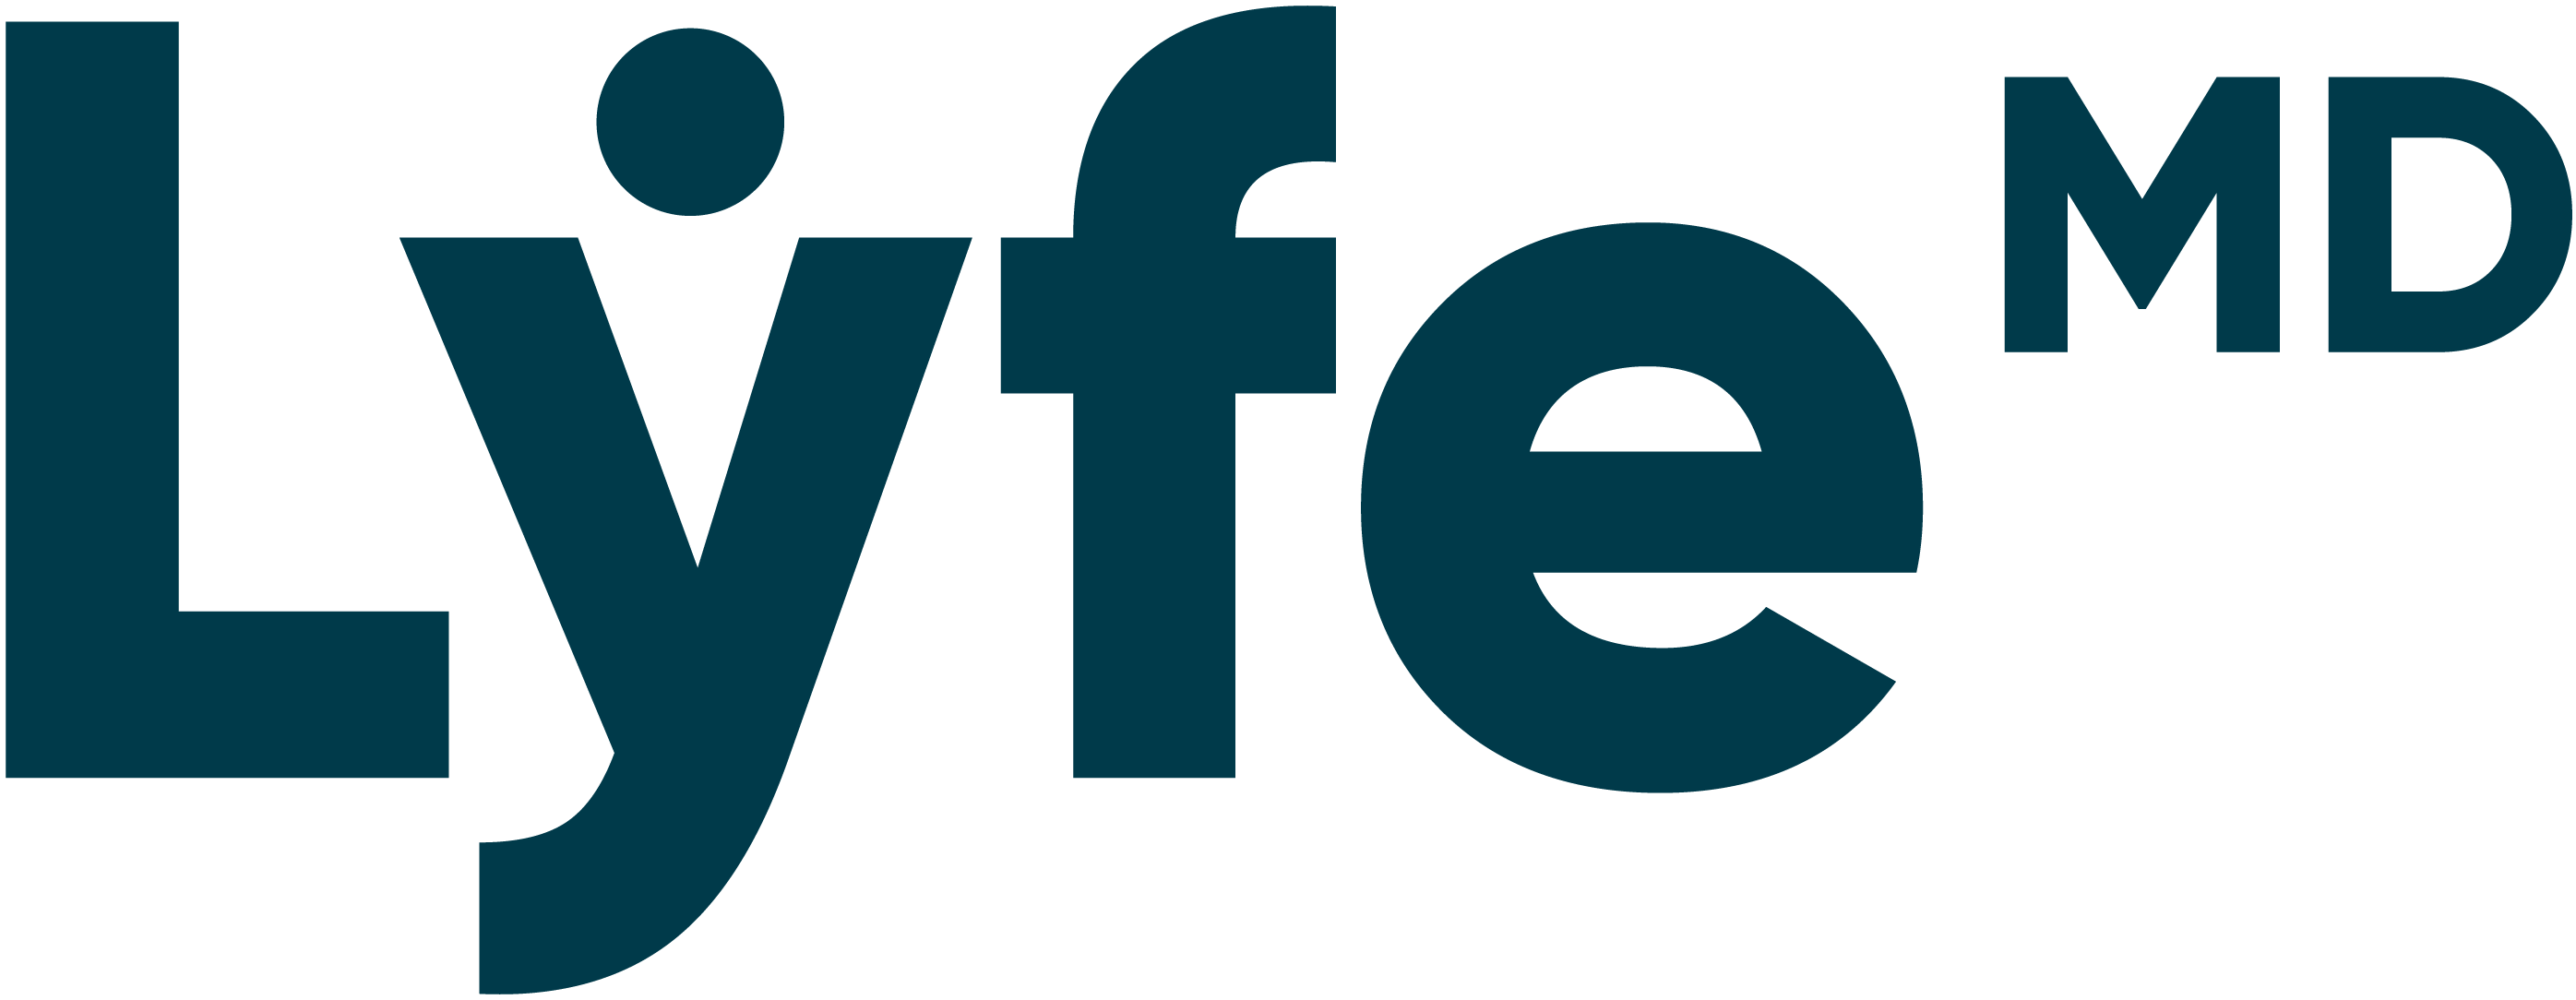 LyfeMD logo